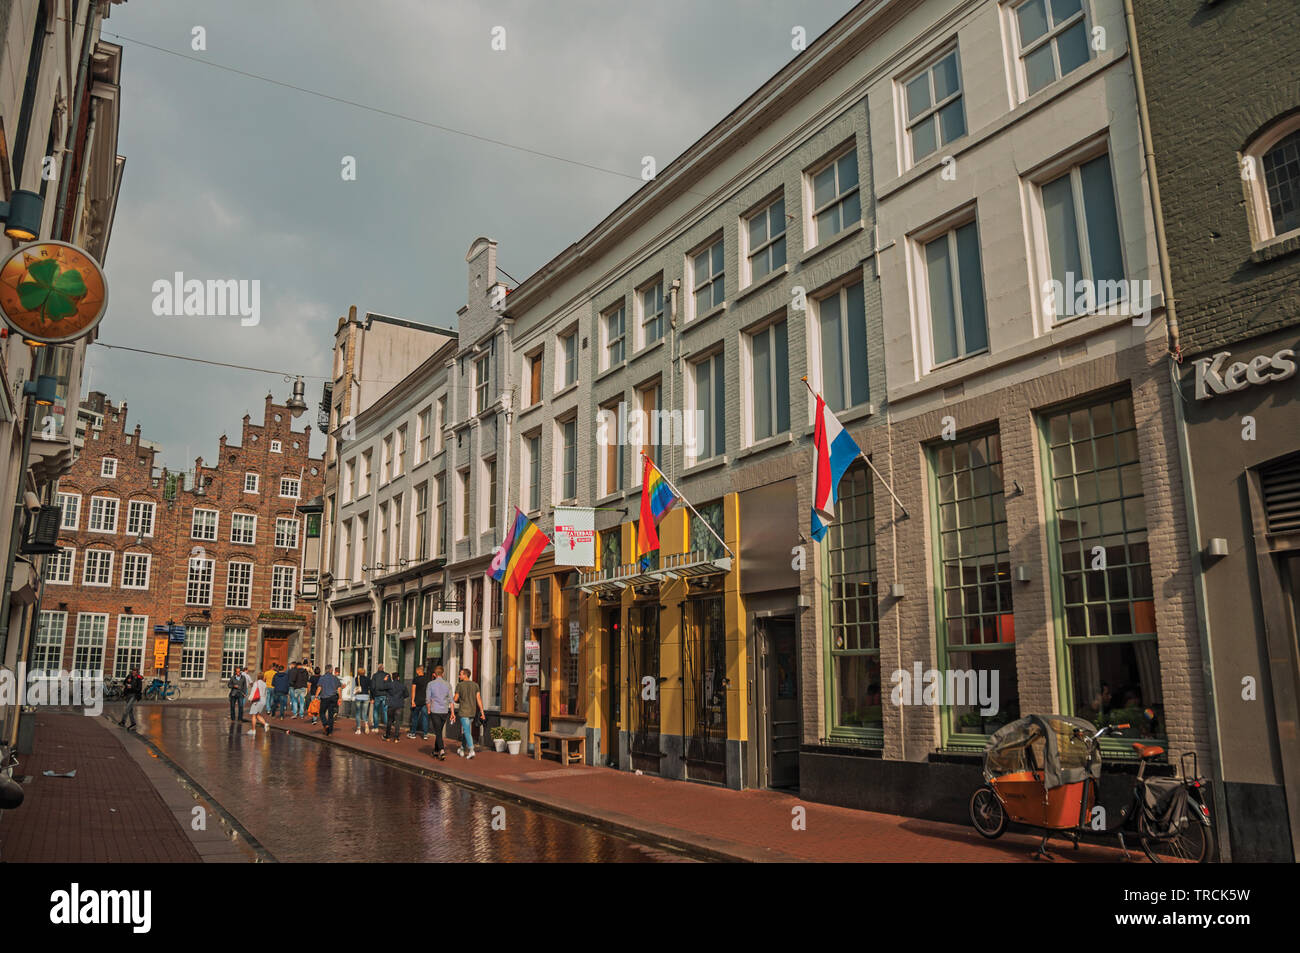 Straße mit Kneipen, Regenbogen Flagge und die Menschen flanieren an bewölkten Tag in s-Hertogenbosch. Gnädig historische Stadt mit lebendigen kulturellen Leben in Netherlan Stockfoto